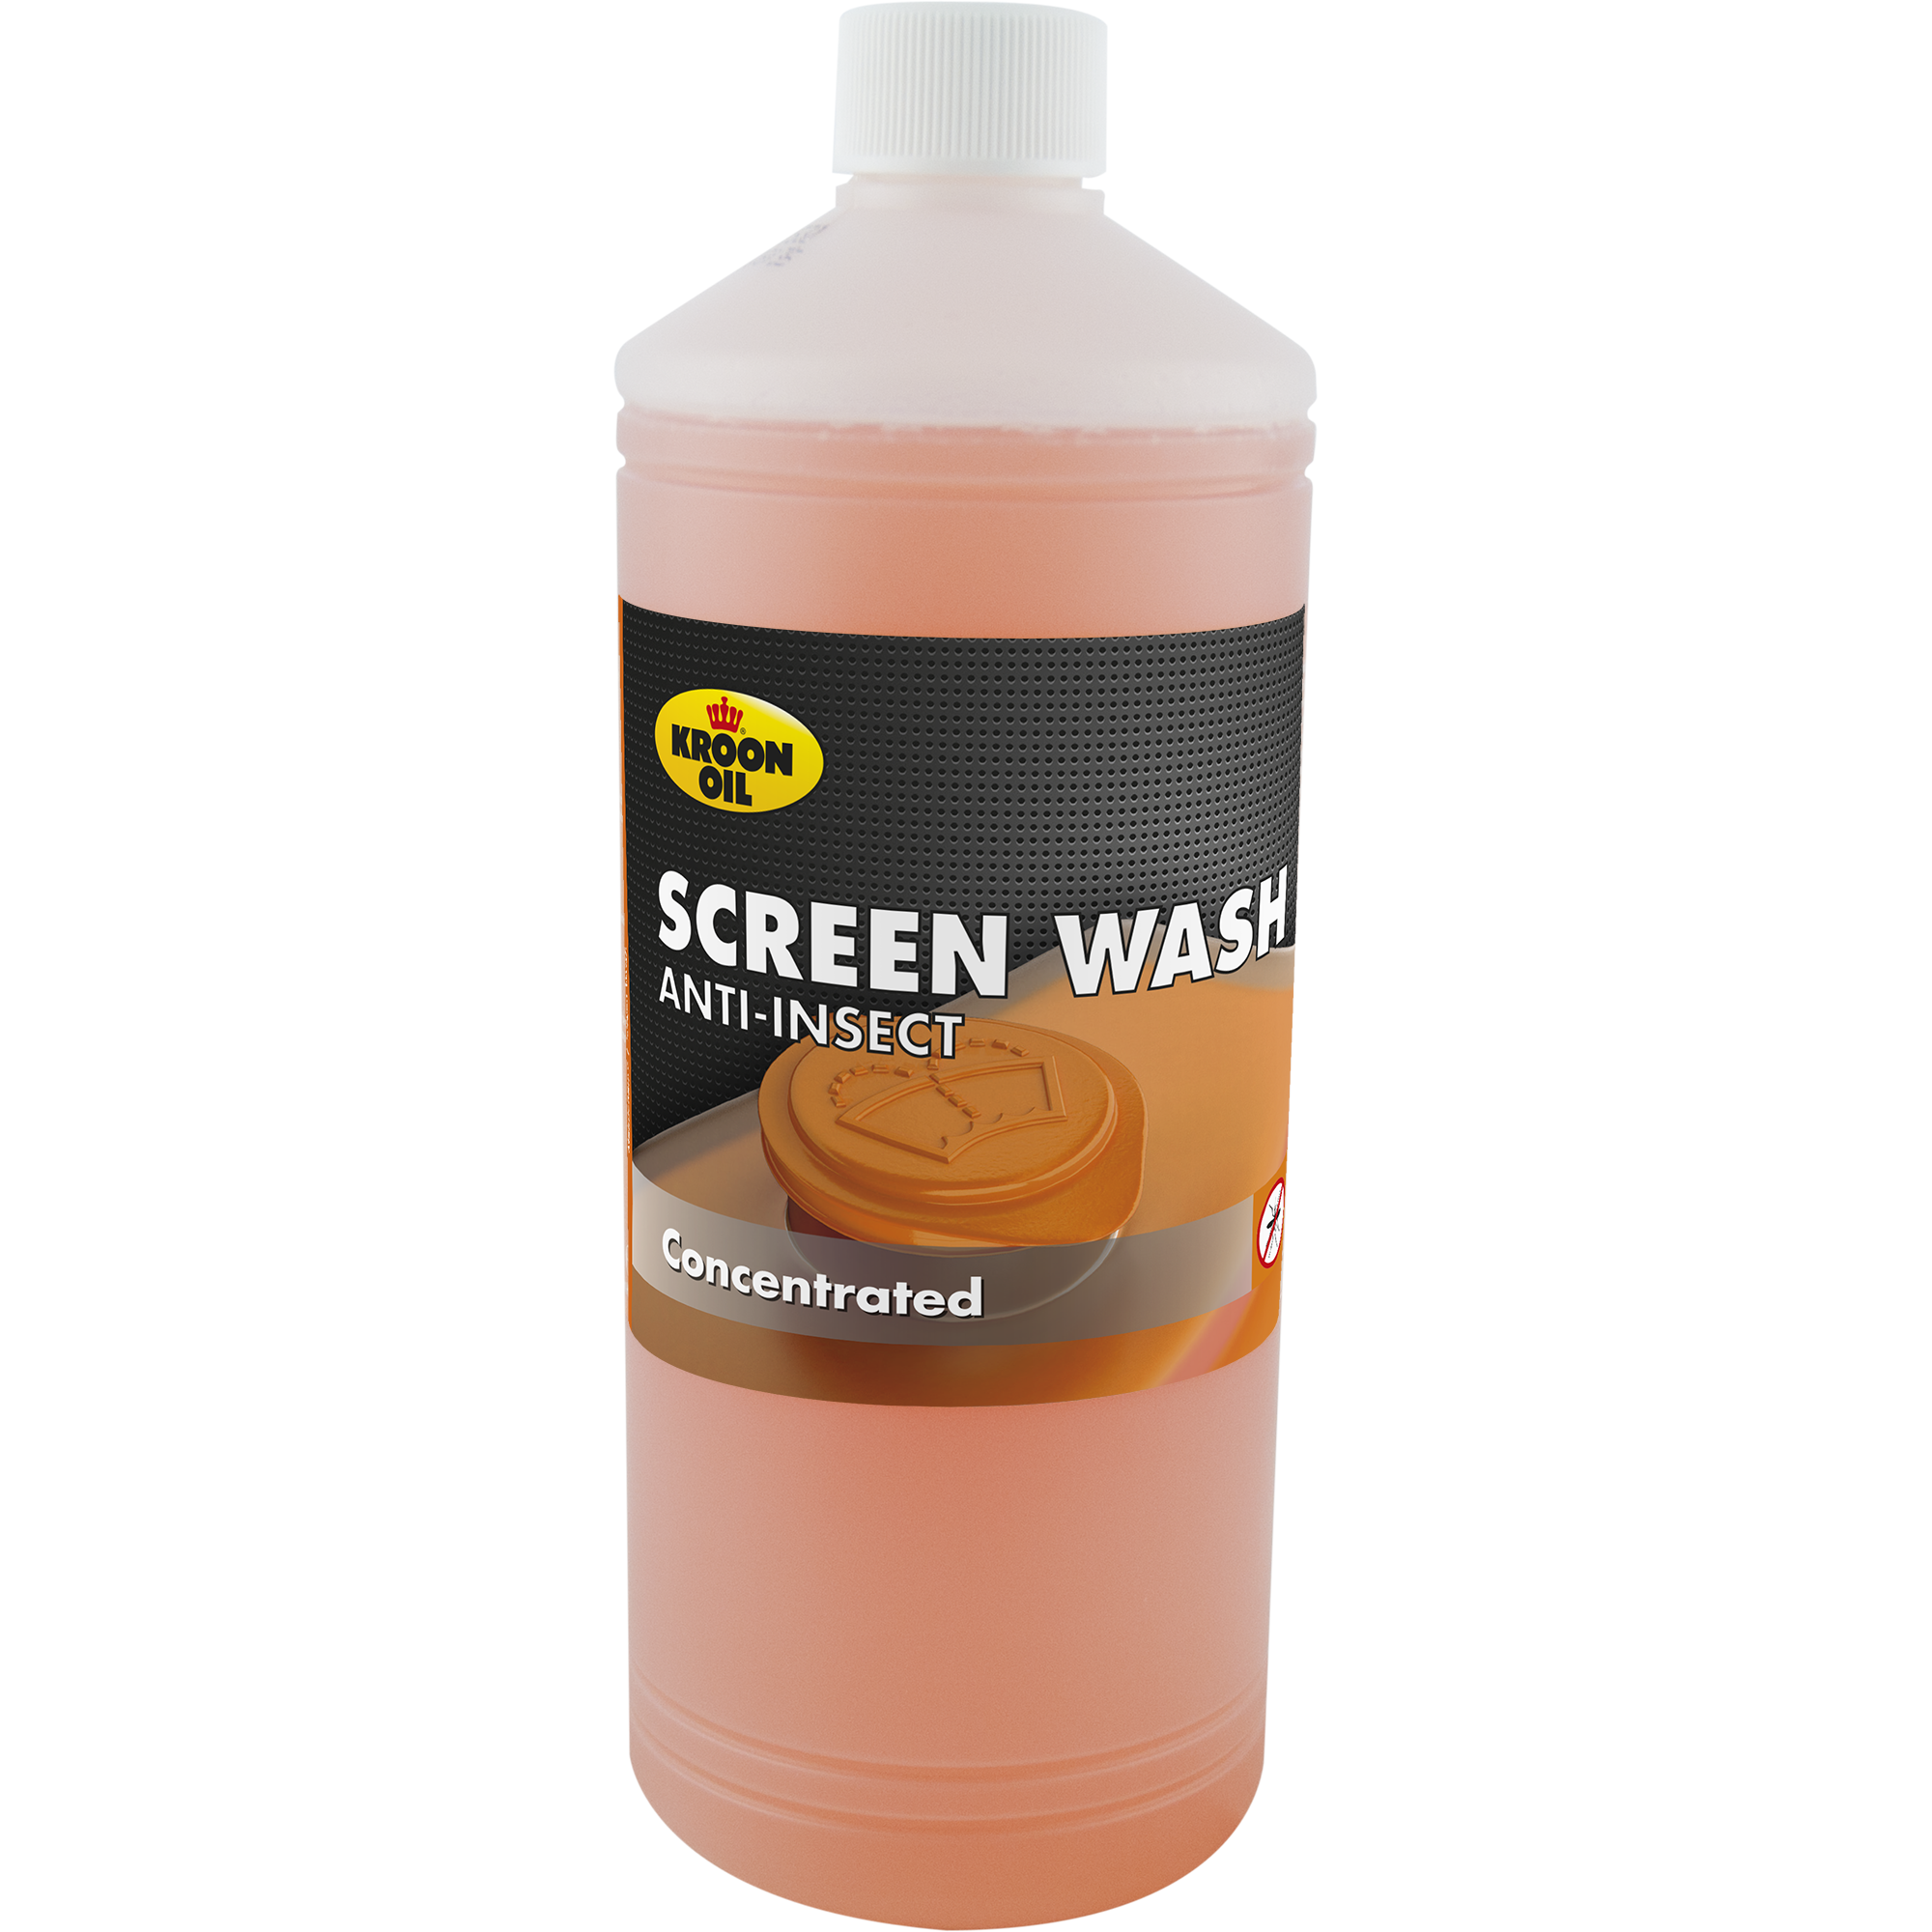 34796-1 Screen Wash Anti-Insect is een sterk geconcentreerde Window Cleaner met anti-insect werking in een geconcentreerde samenstelling.